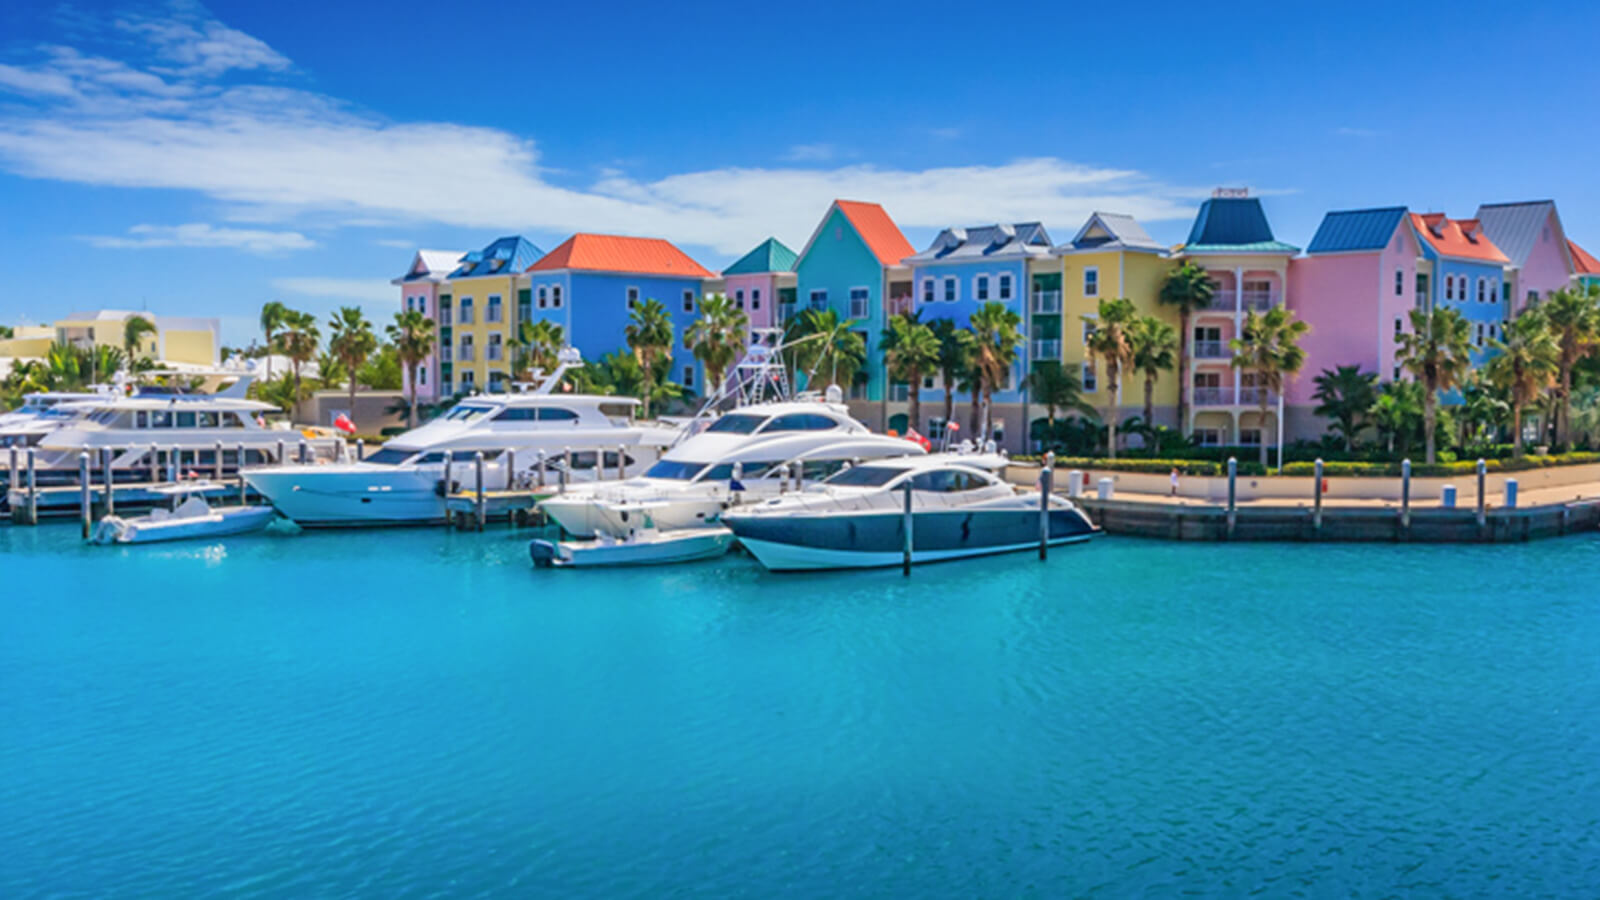 Image of Nassau, Bahamas